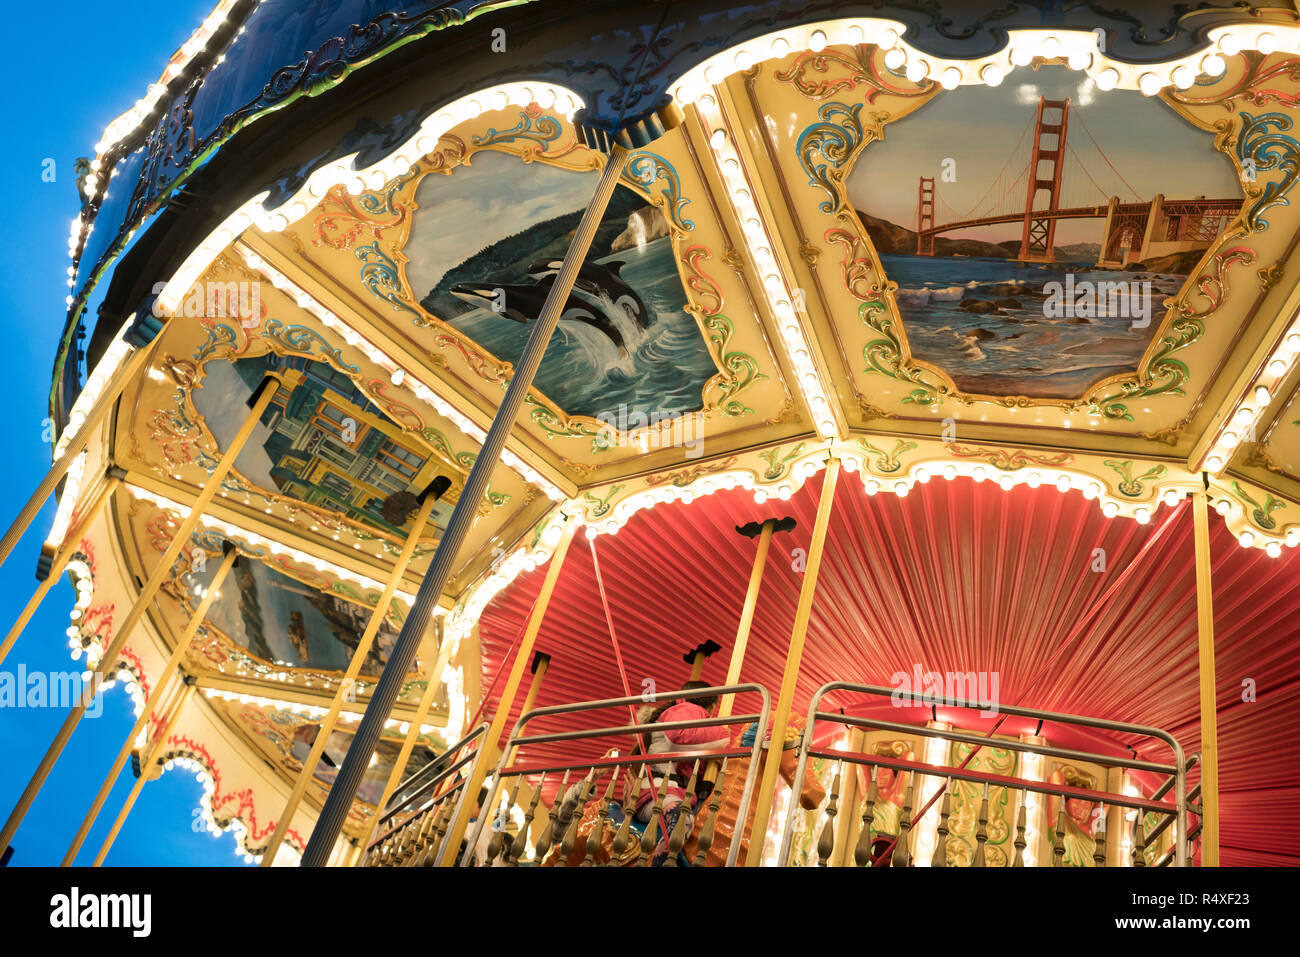 Ein altes Karussell mit Leben Szenen aus San Francisco in einem Ende gemalt - Licht, Pier 39, San Francisco, Kalifornien, USA Stockfoto